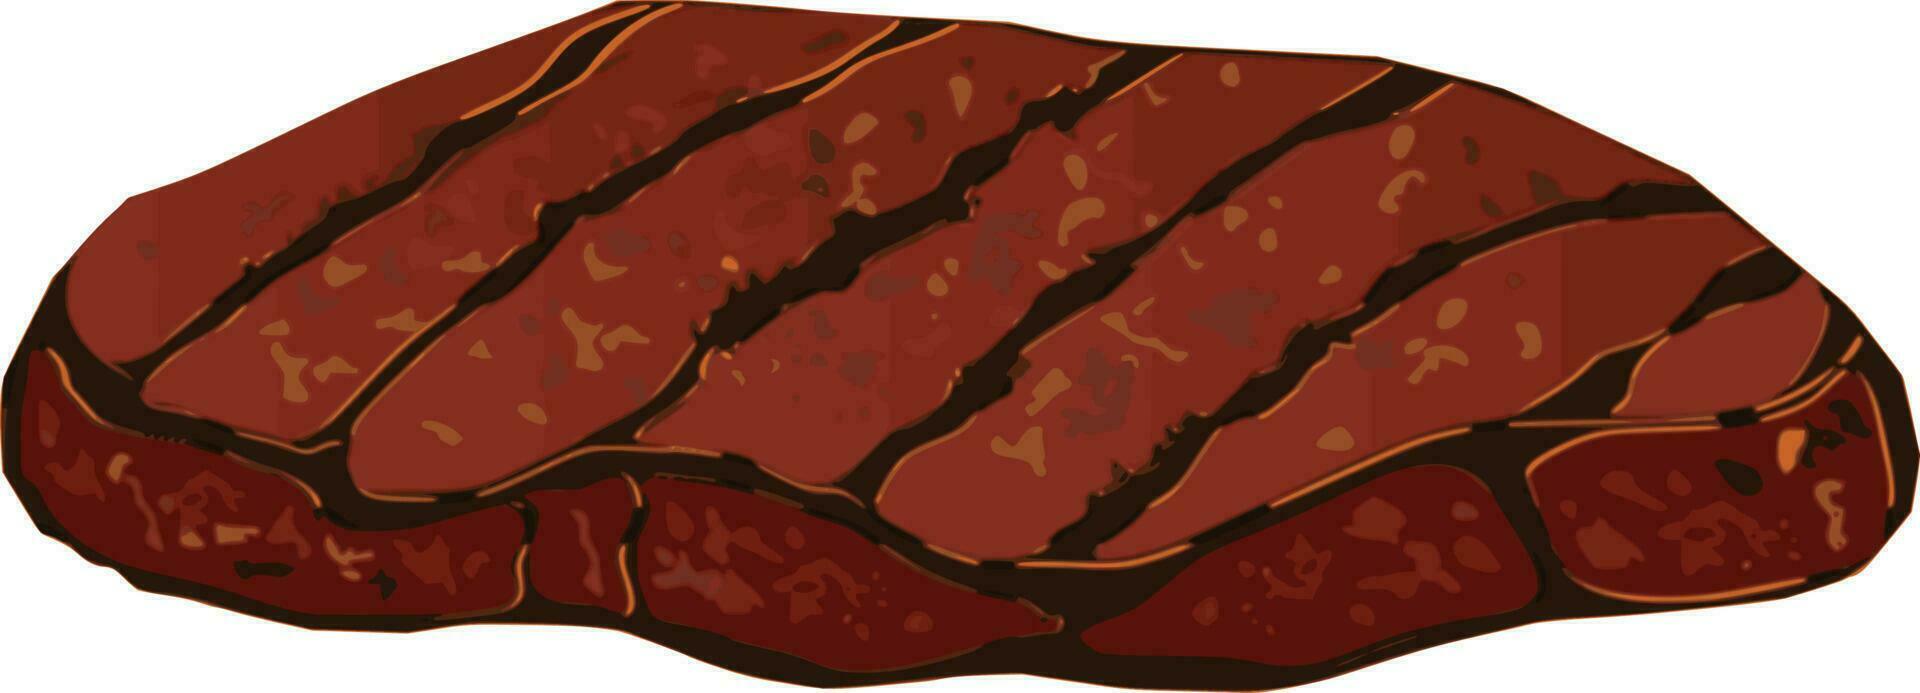 steak illustratie vector